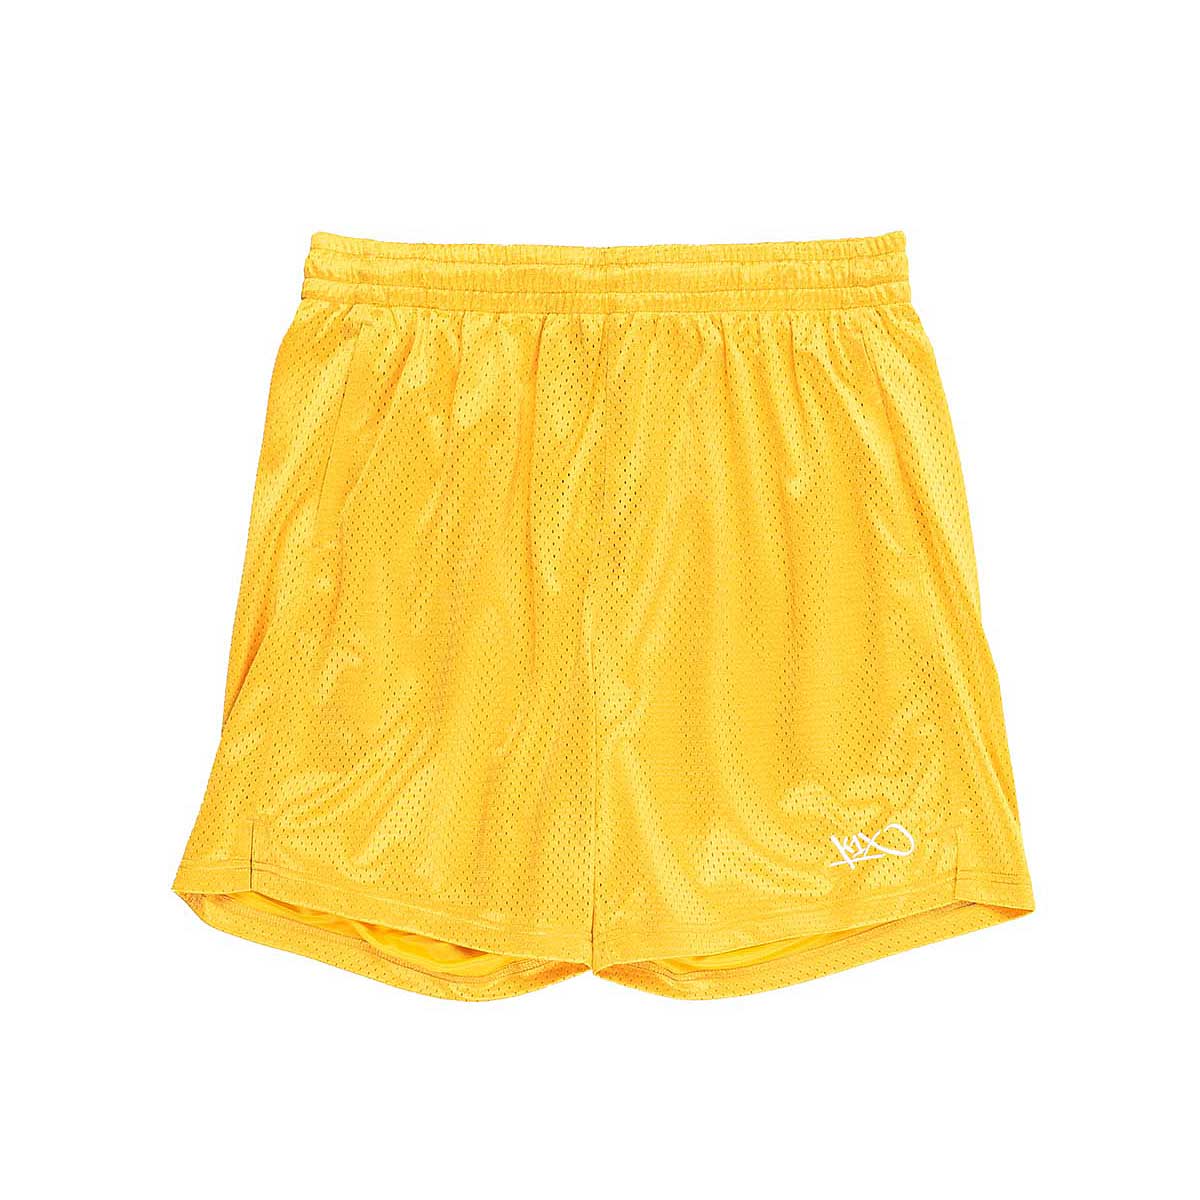 K1X Oldschool Mesh Shorts, Lemon Chrome